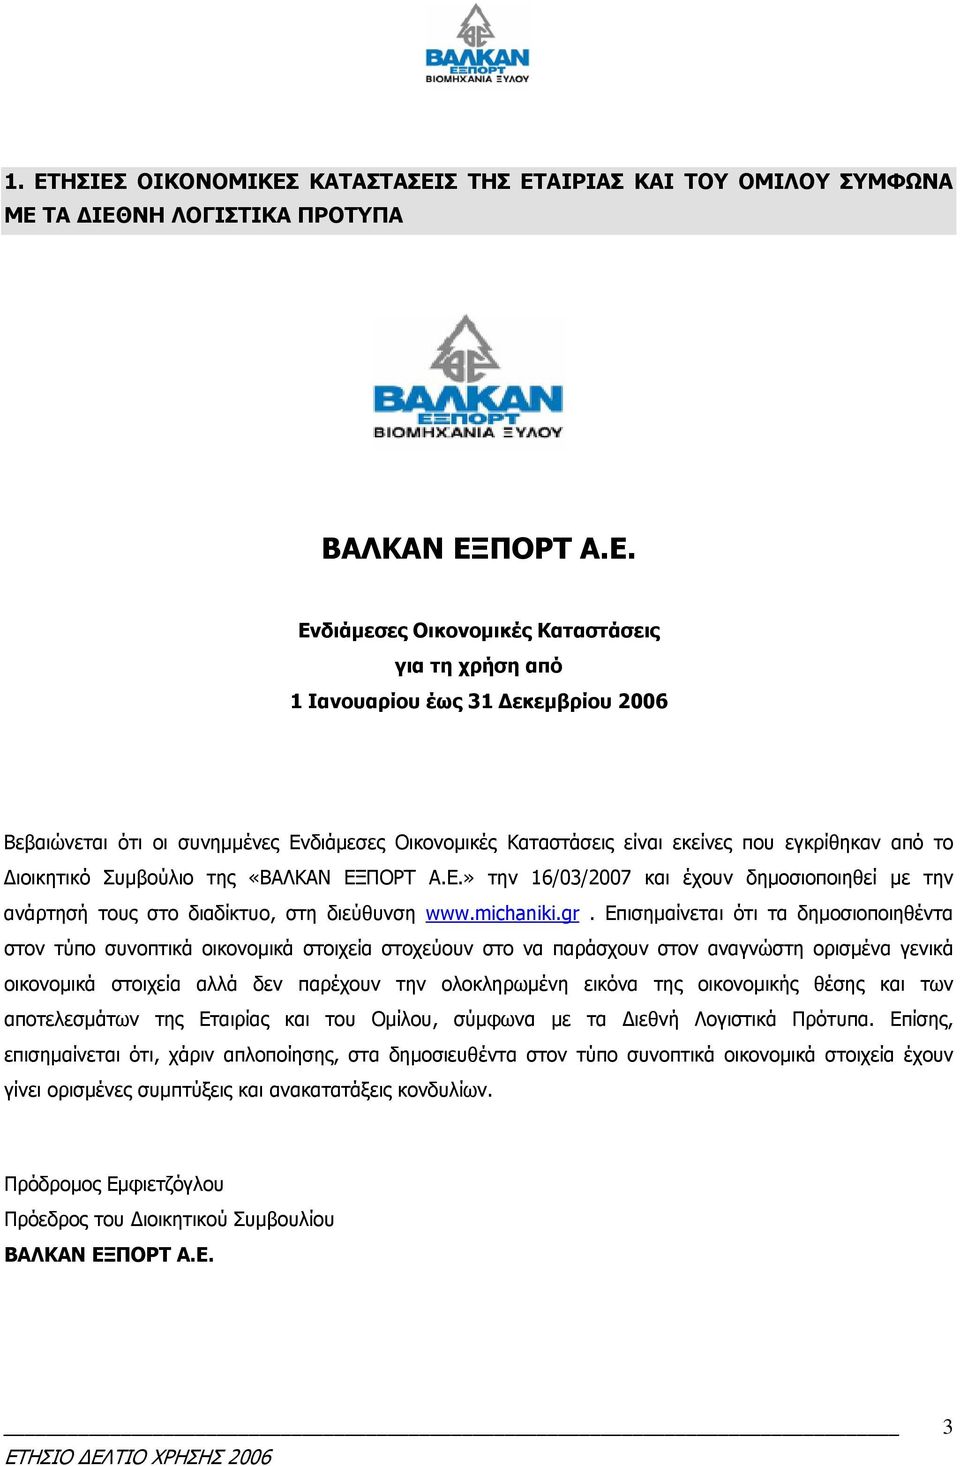 » την 16/03/2007 και έχουν δηµοσιοποιηθεί µε την ανάρτησή τους στο διαδίκτυο, στη διεύθυνση www.michaniki.gr.